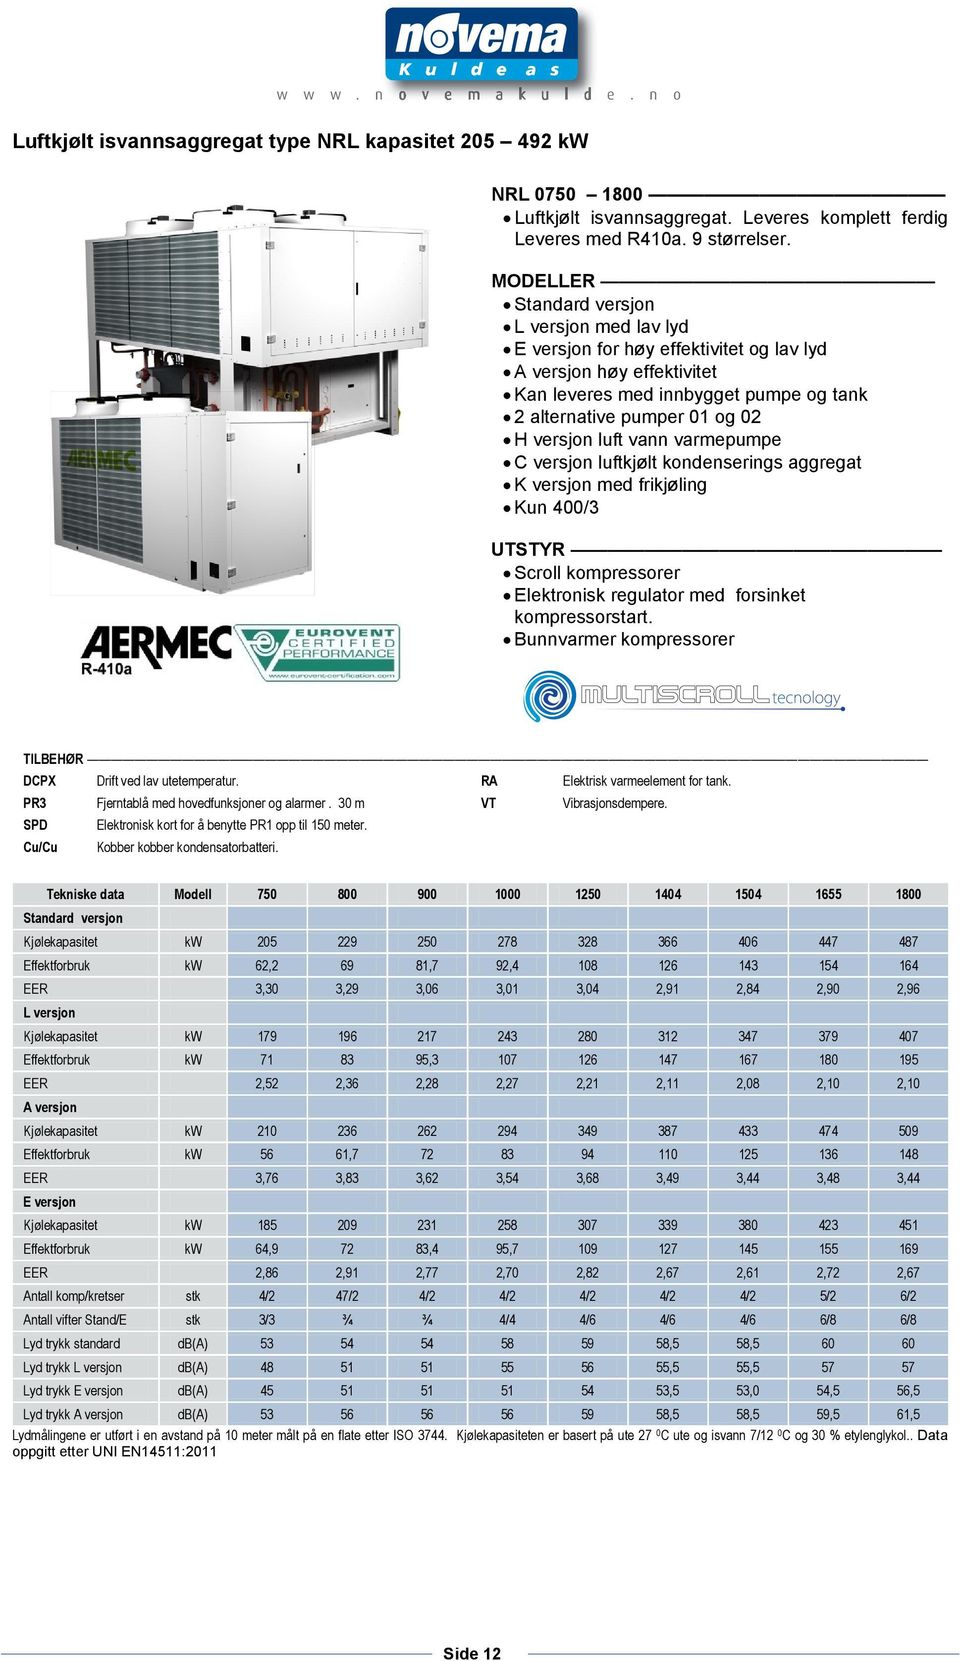 luft vann varmepumpe C versjon luftkjølt kondenserings aggregat K versjon med frikjøling Kun 400/3 UTSTYR Scroll kompressorer Elektronisk regulator med forsinket kompressorstart.